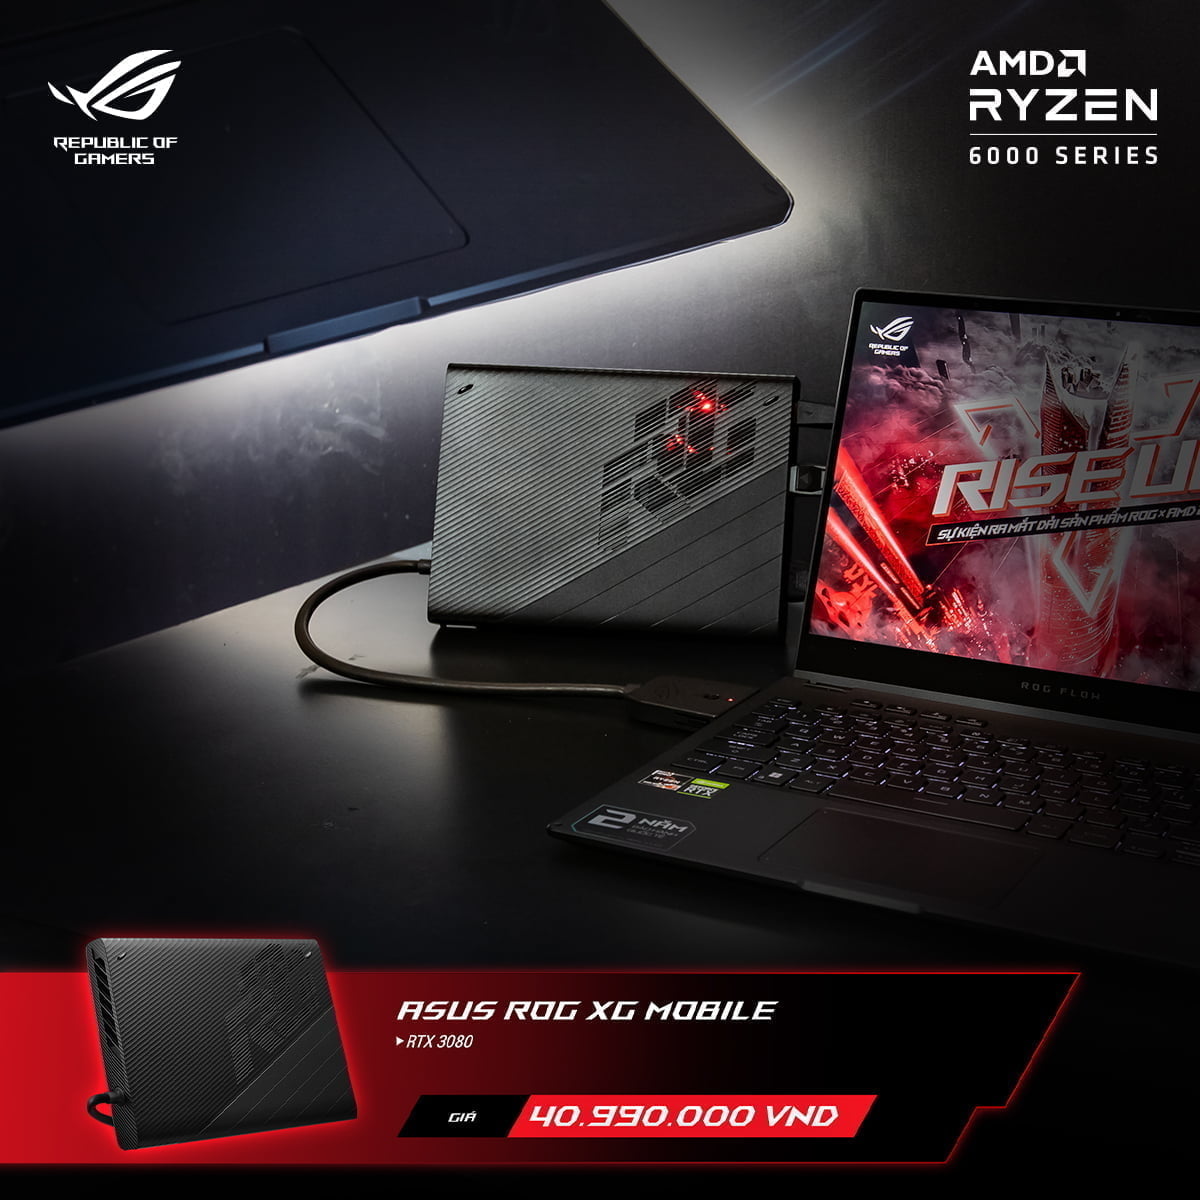 [PR] ASUS ROG công bố loạt sản phẩm laptop mới nền tảng AMD Ryzen 6000 Series tại thị trường Việt Nam - Image 22